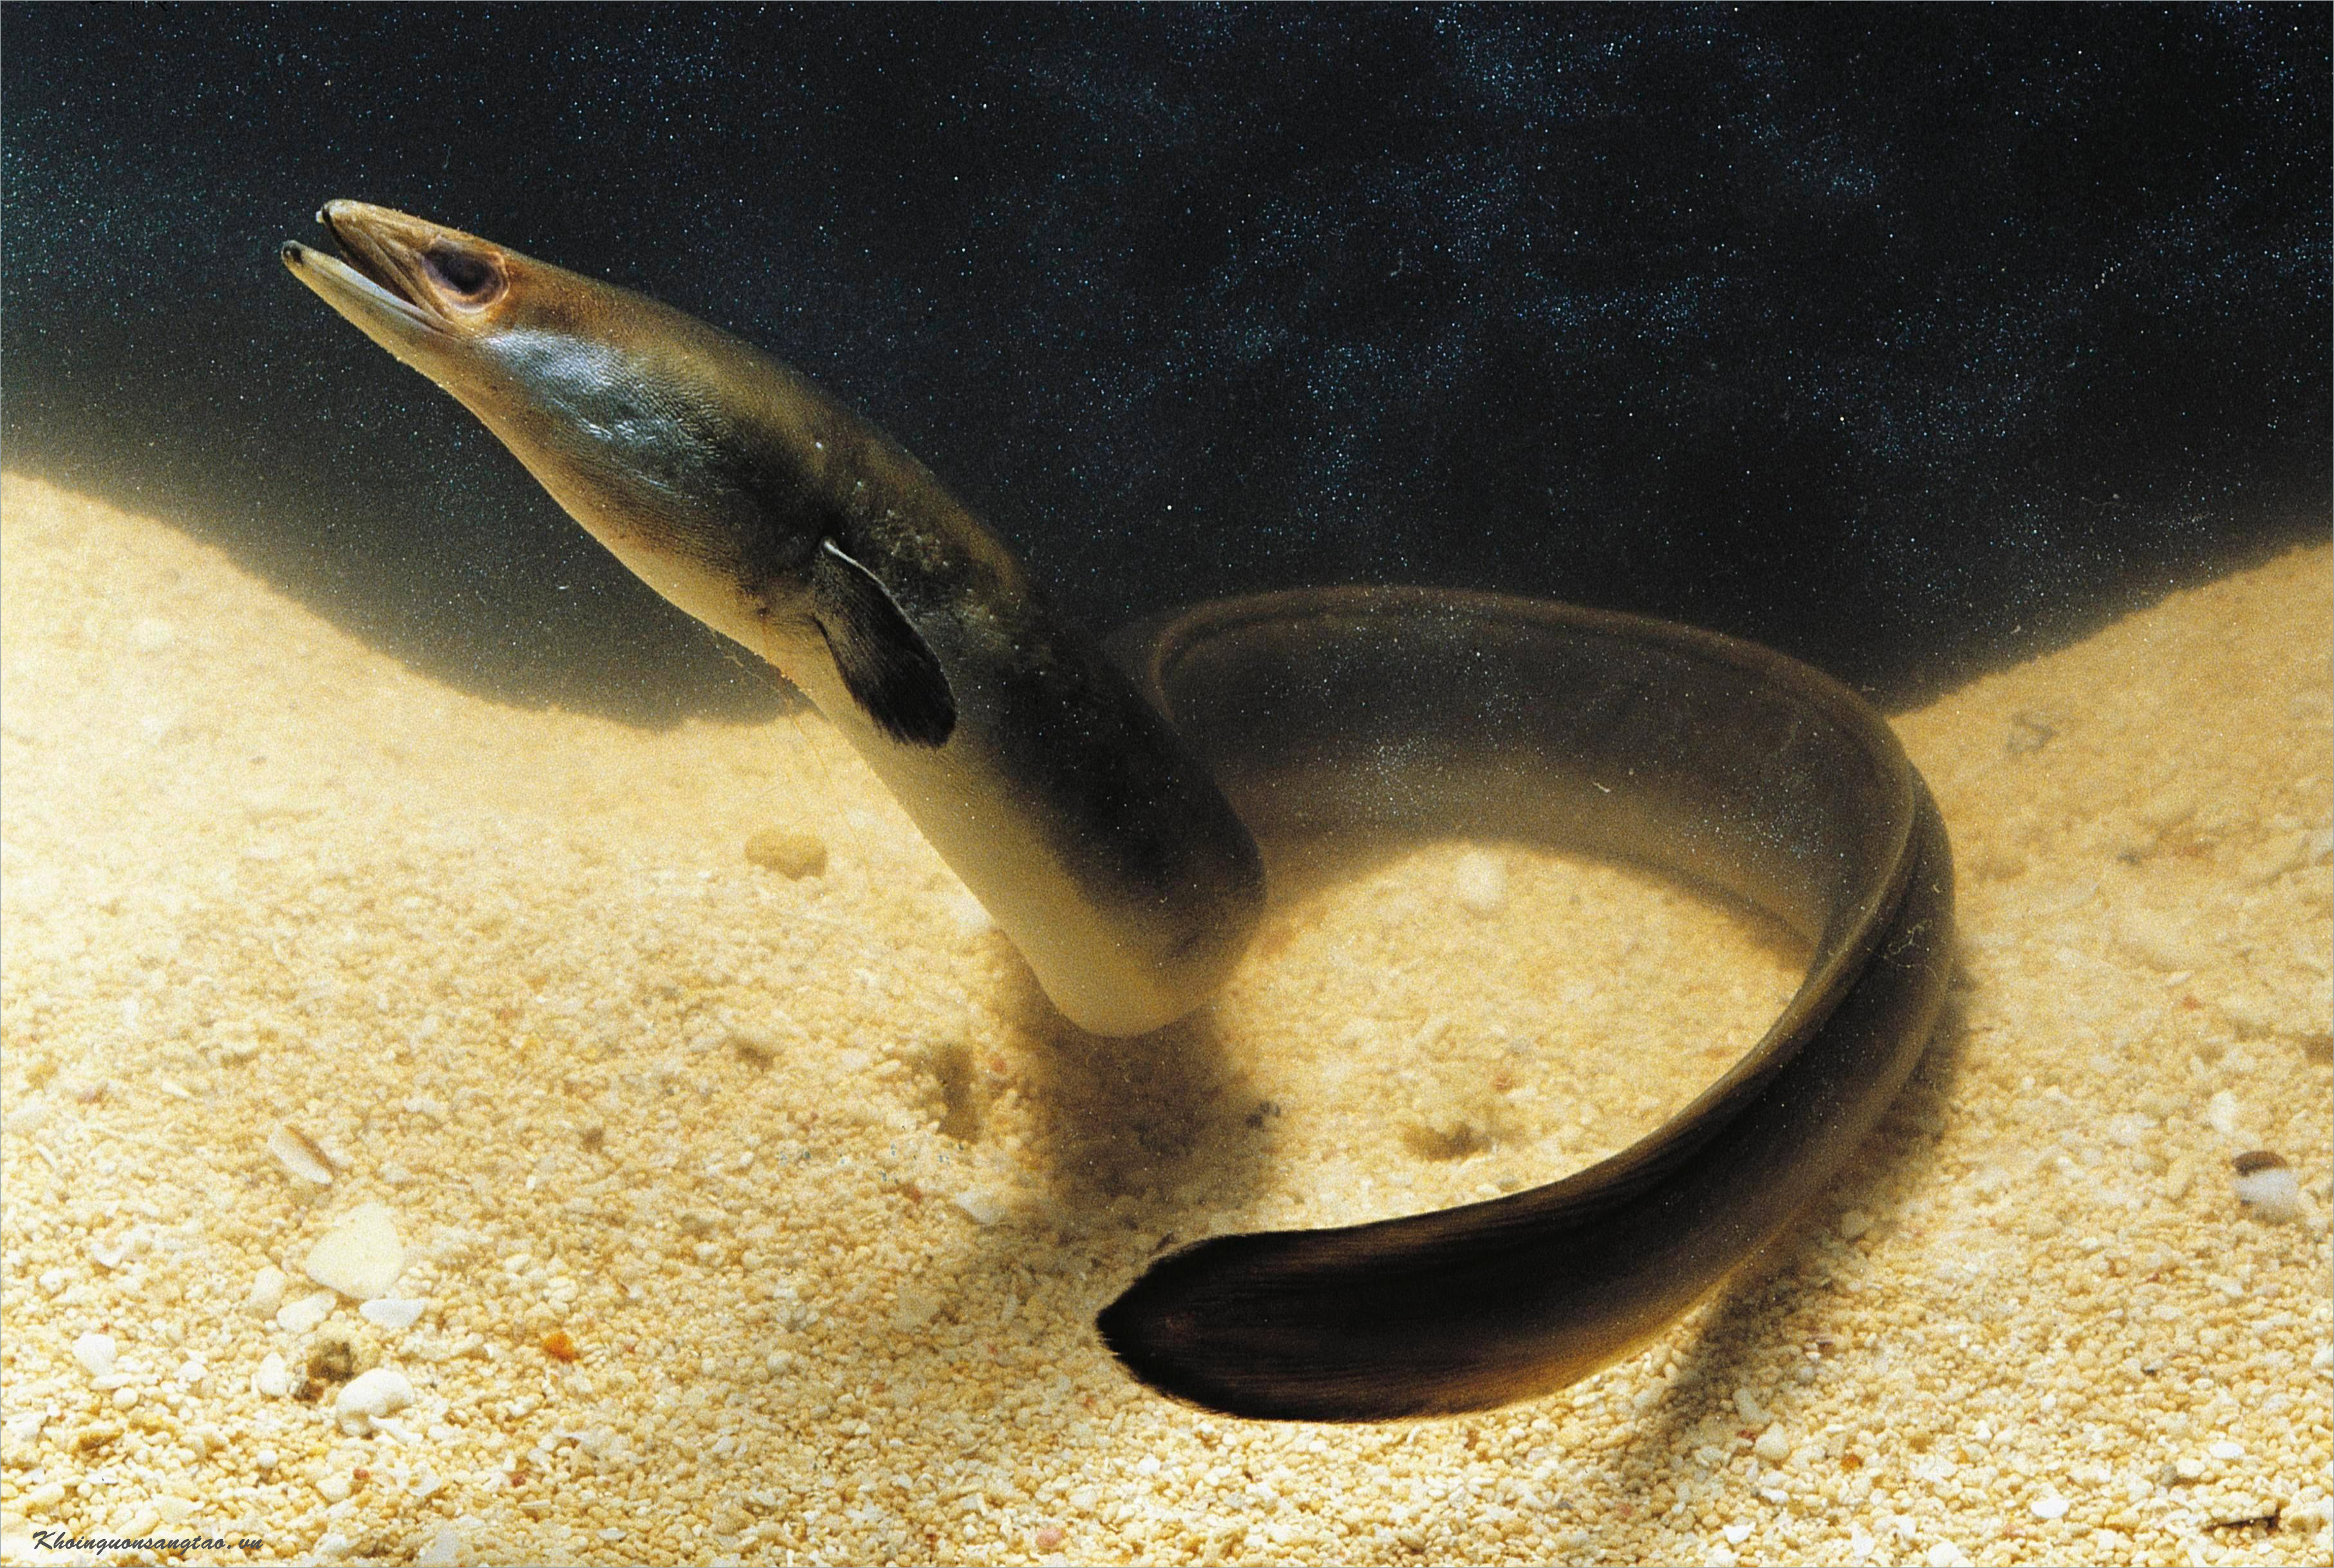 Kinh nghiệm sinh sản lươn đồng - Dũng cá - Dũng cá